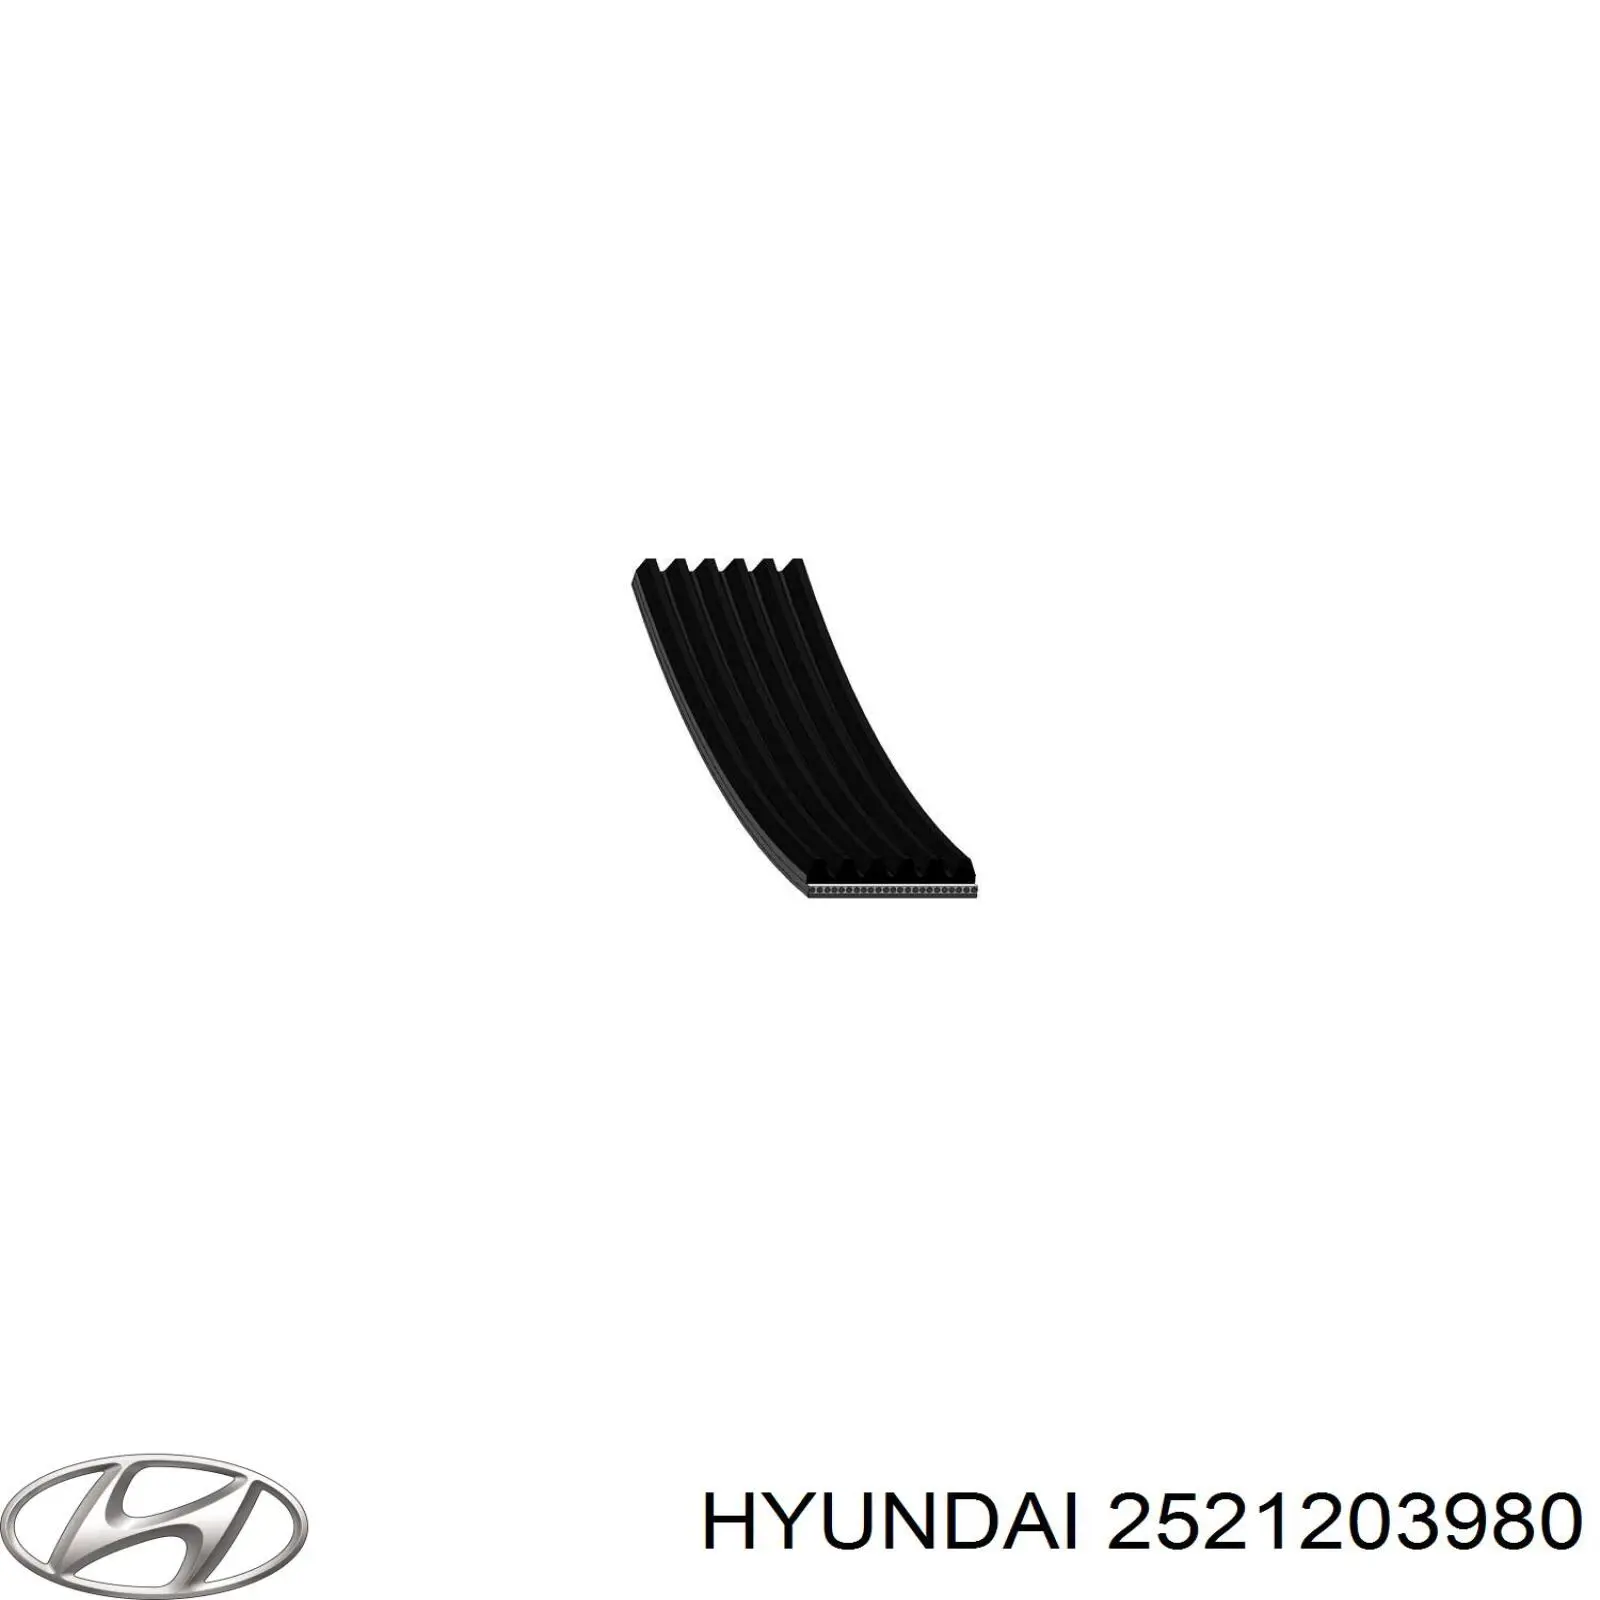 2521203980 Hyundai/Kia correa trapezoidal